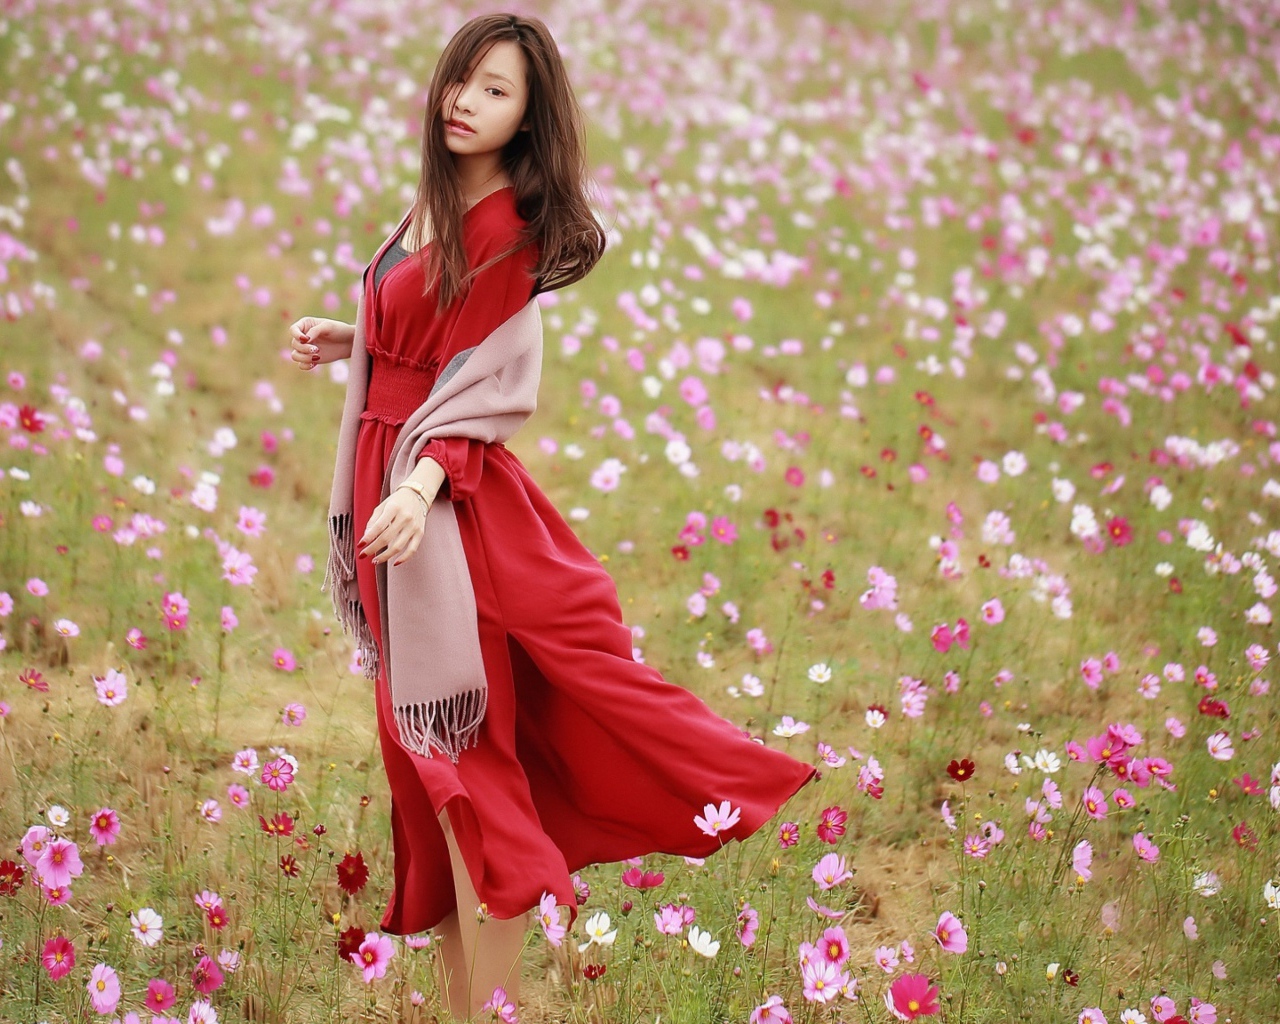 Красивая азиатка в красном платье на поле с цветами космеи